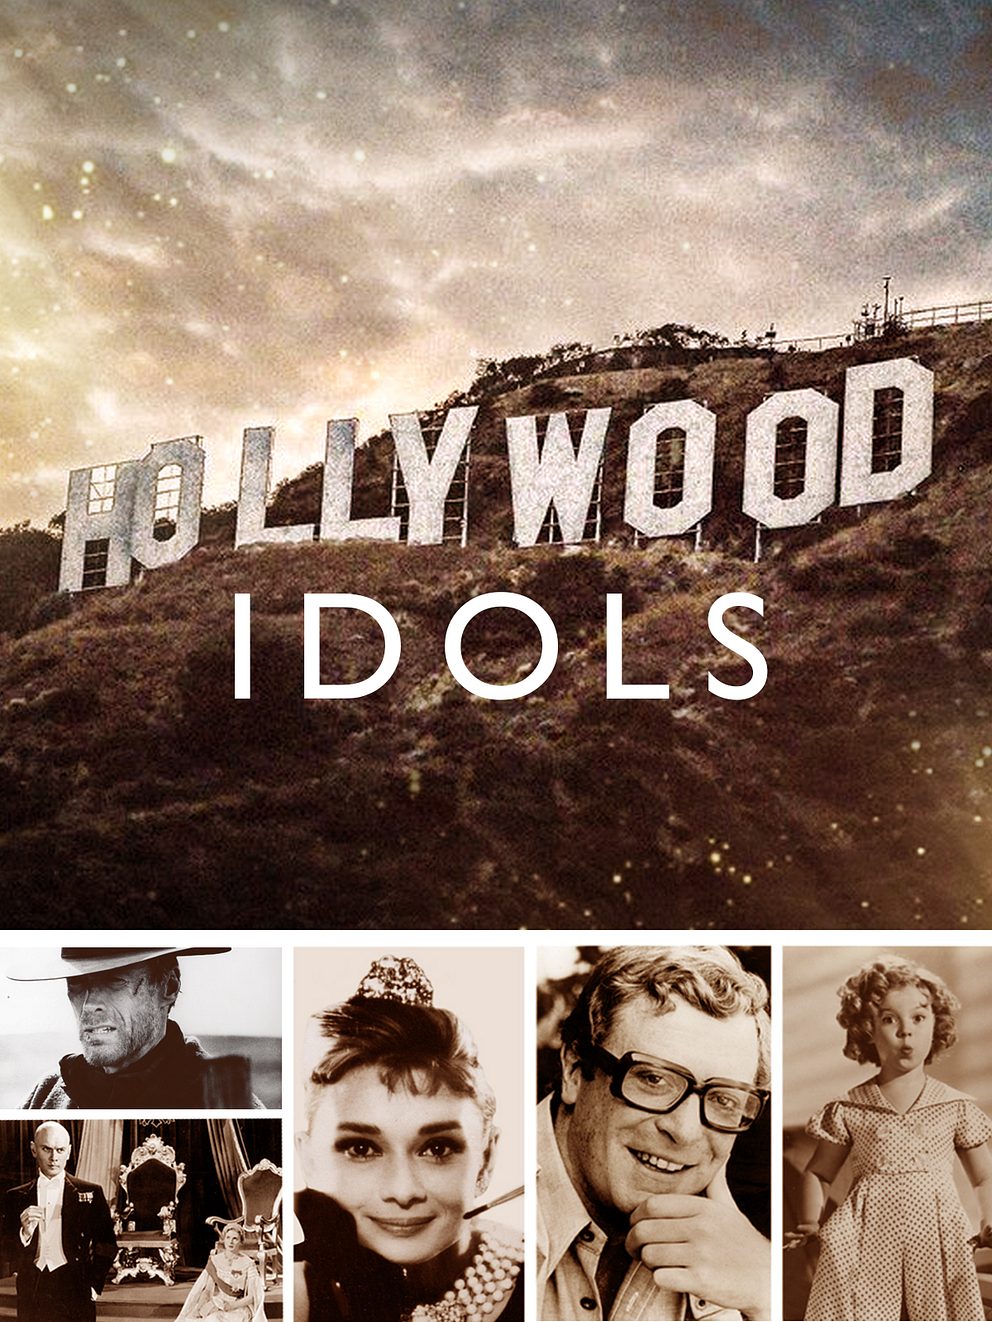 Hollywood Idols